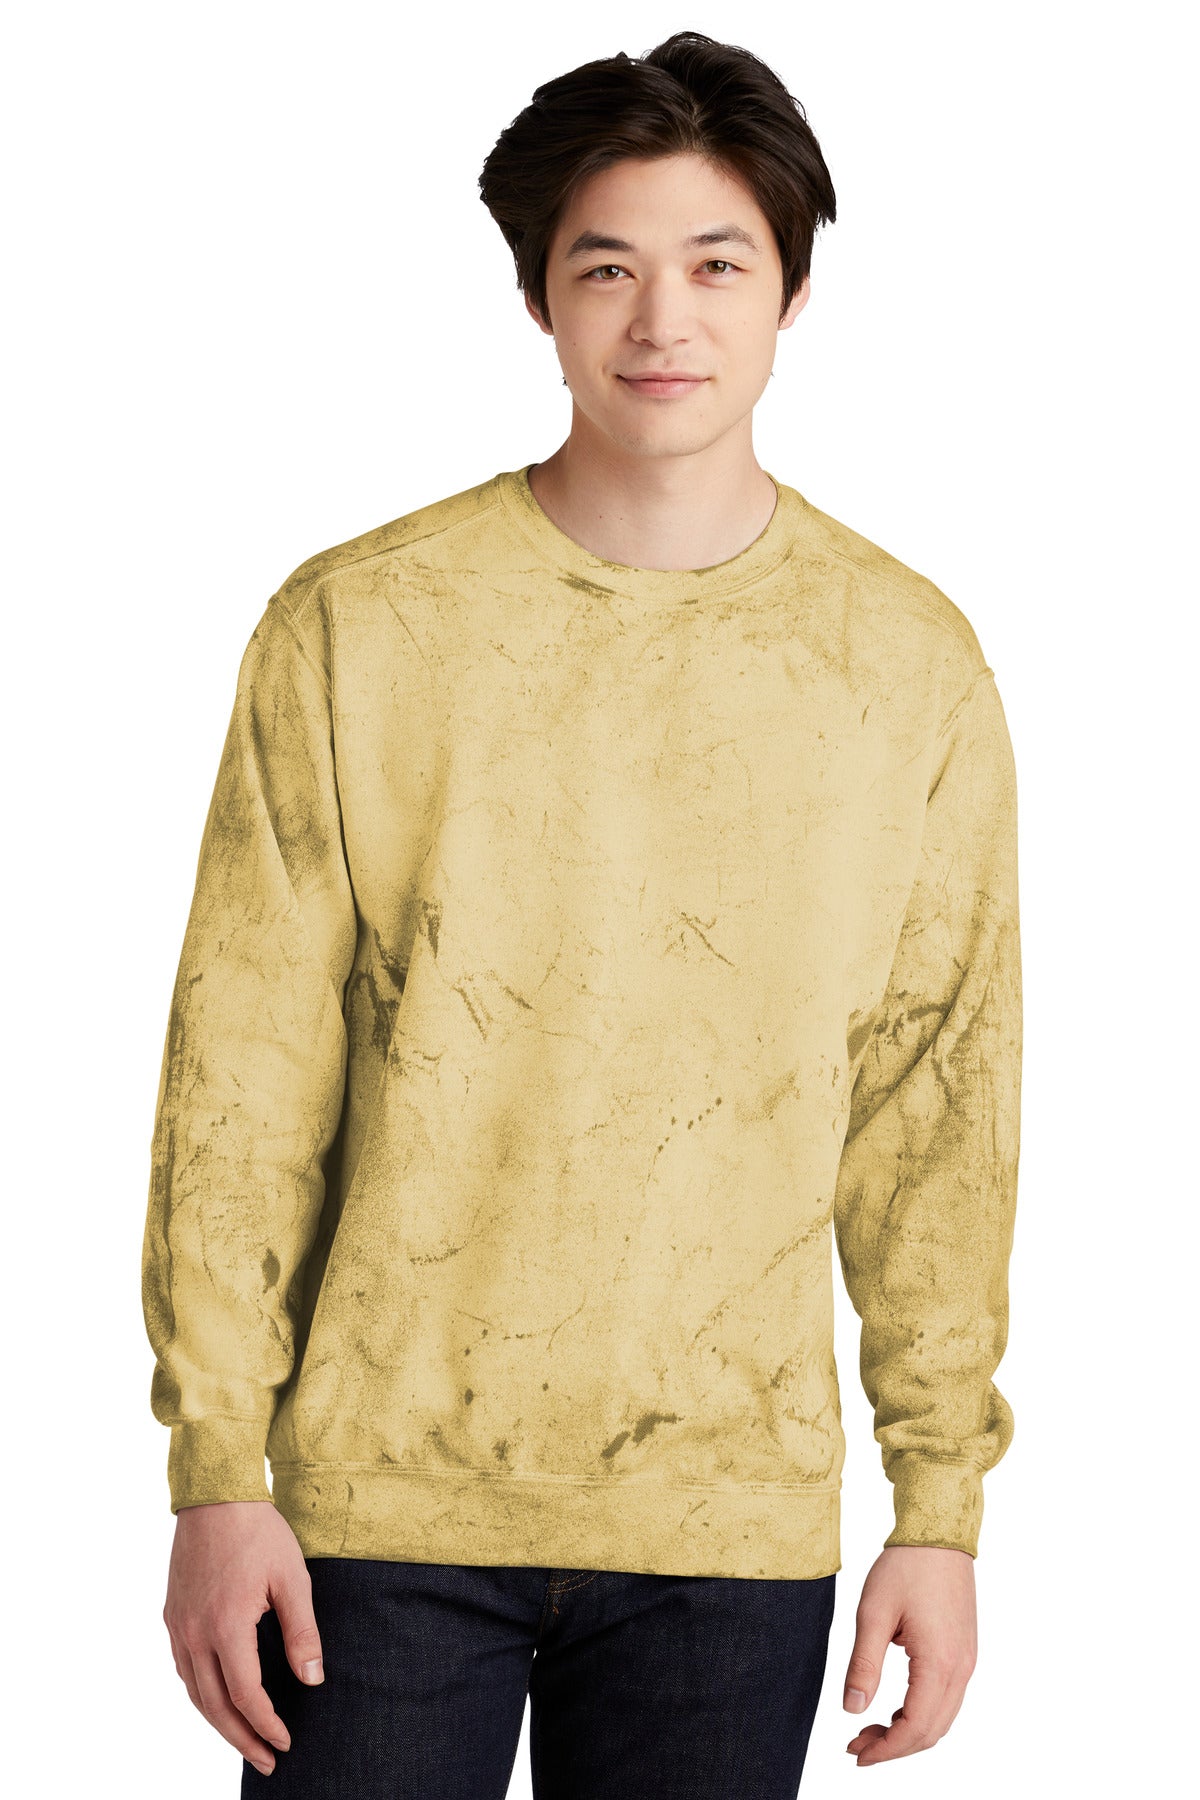 Sweatshirts/Fleece Citrine Comfort Colors